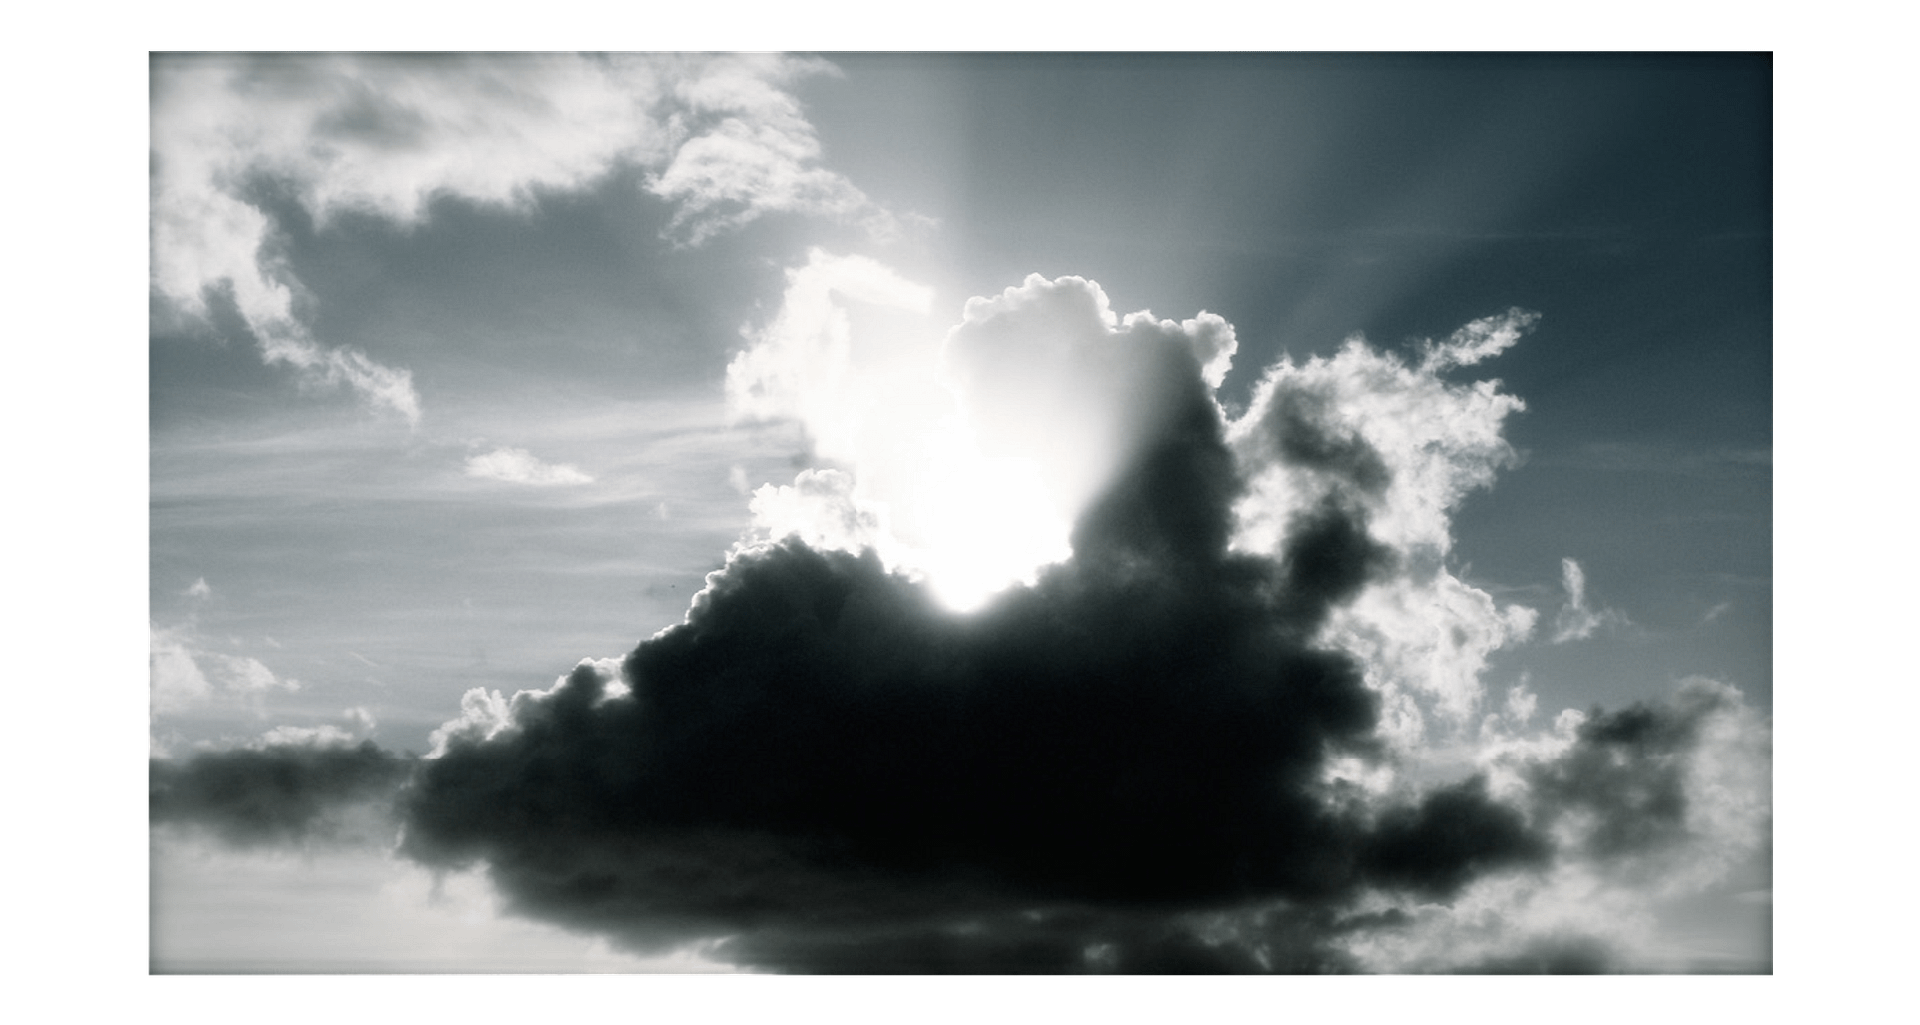 Heavens Above by Julian Lennon